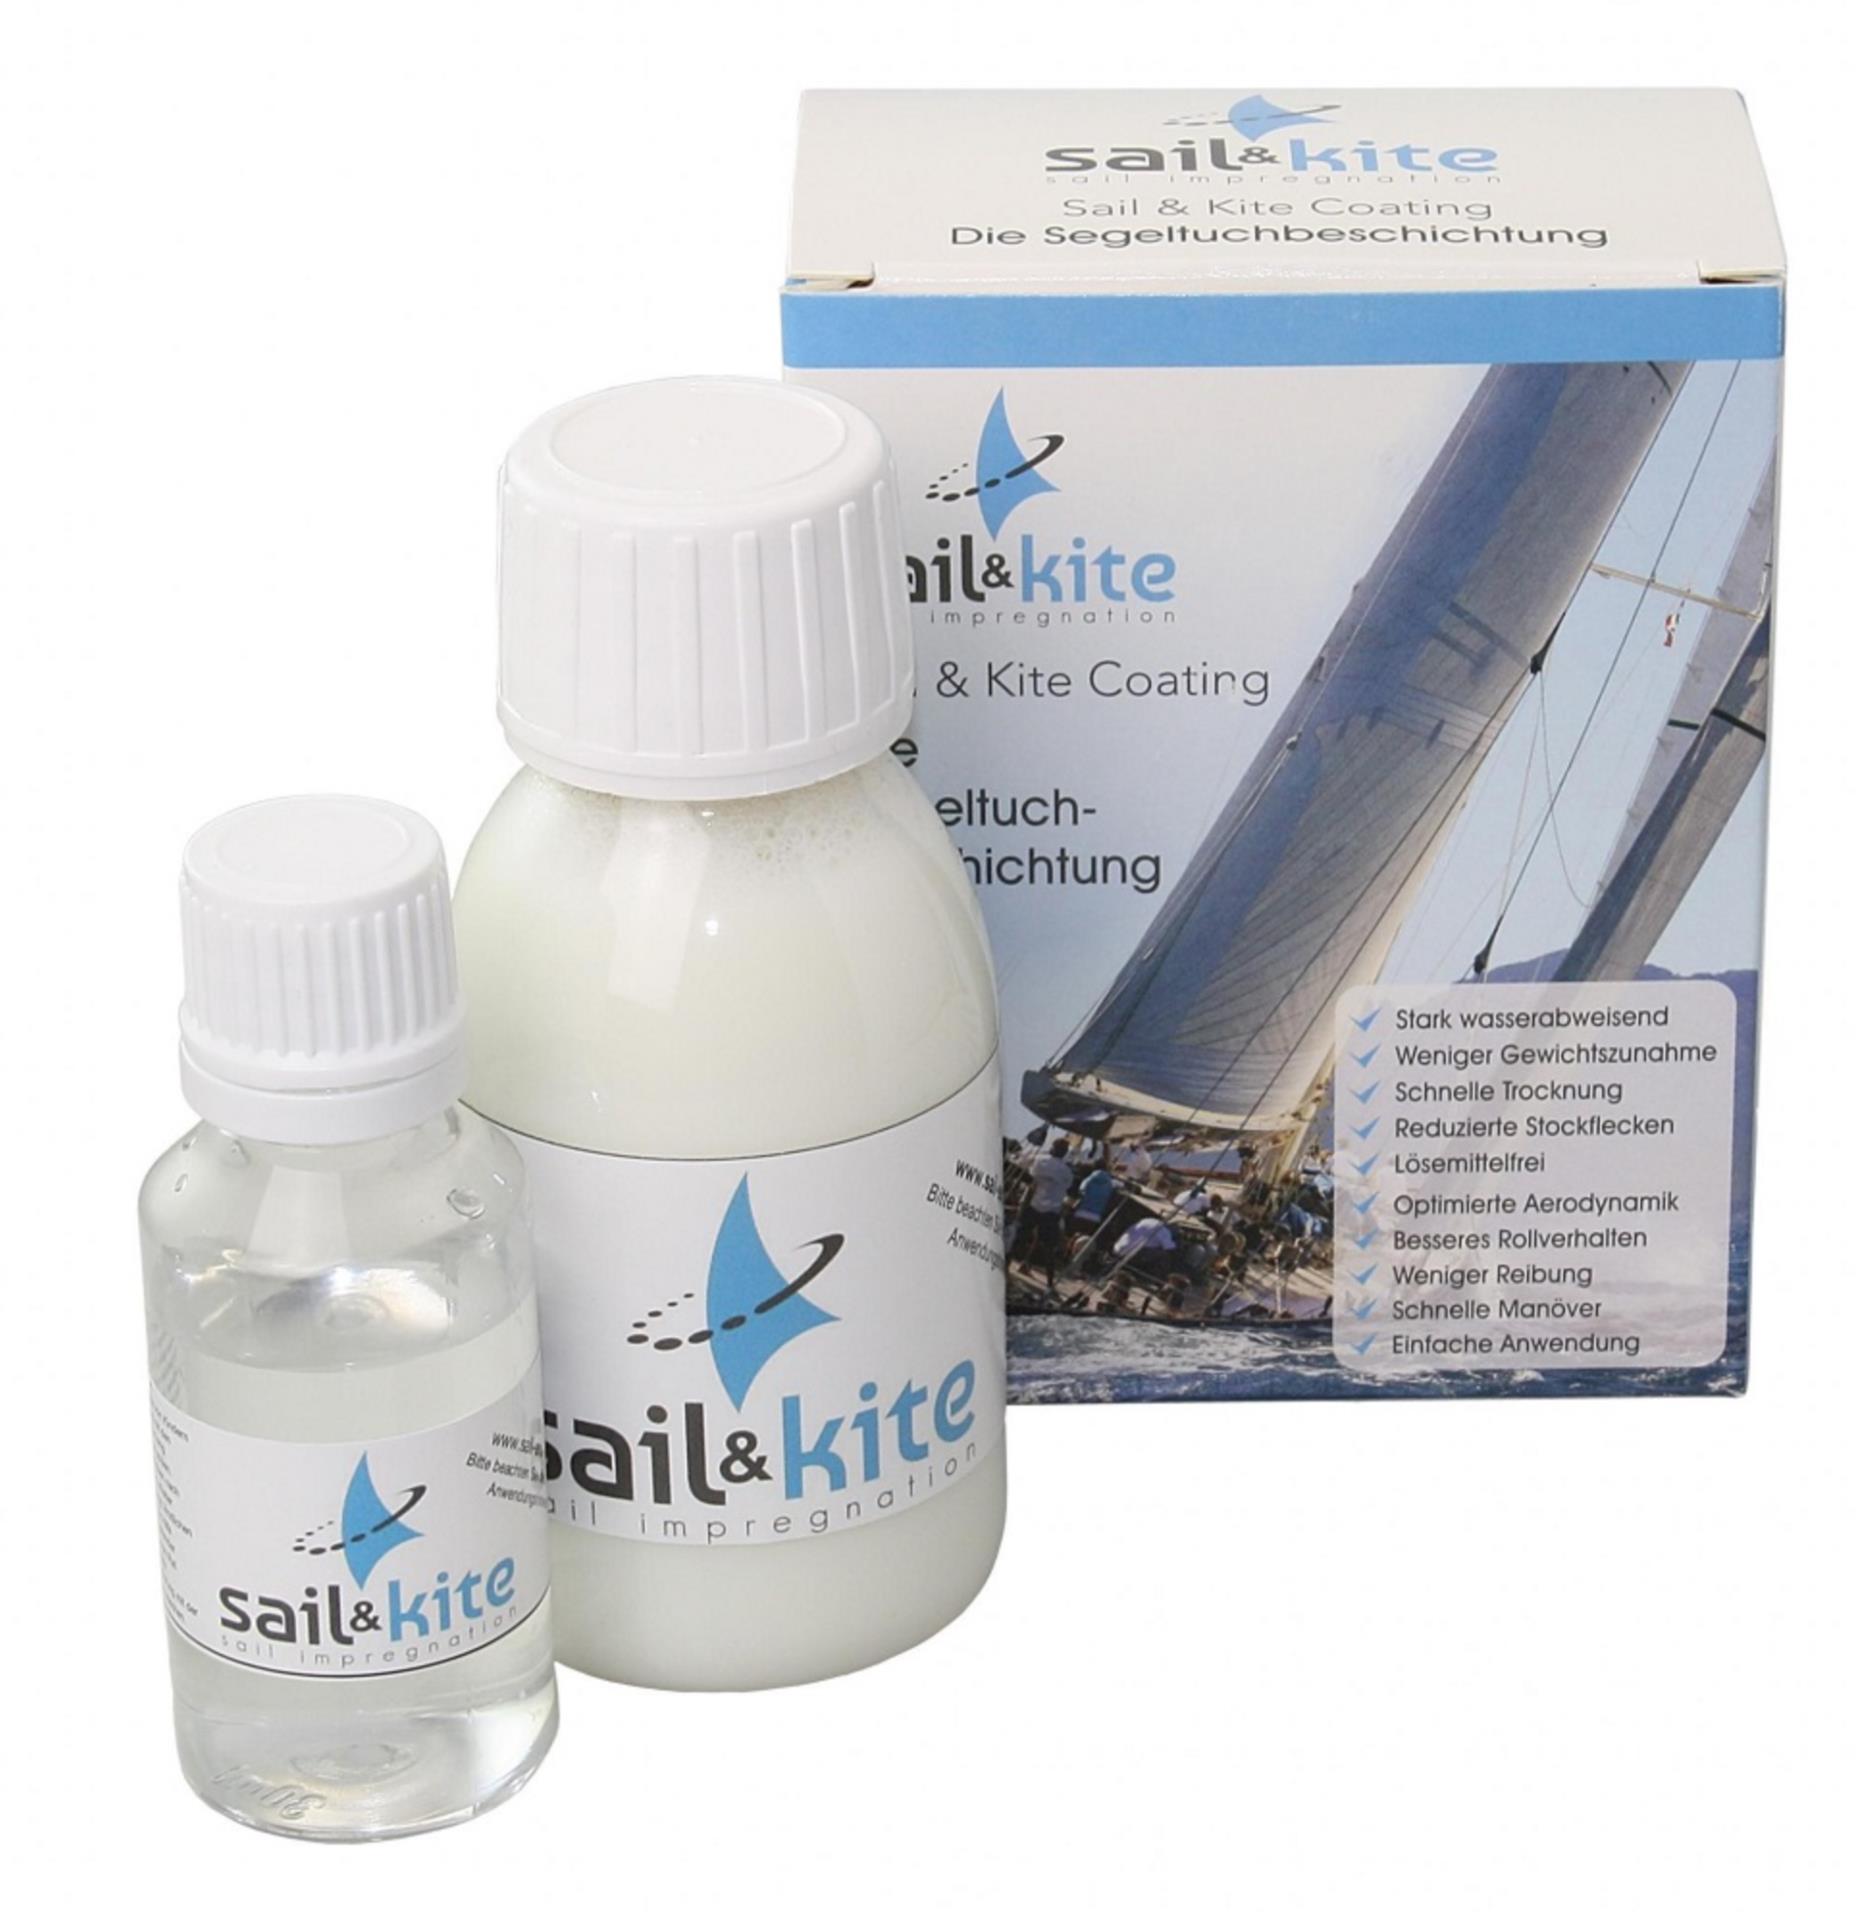 SAIL & KITE Impregnation, 500 ml